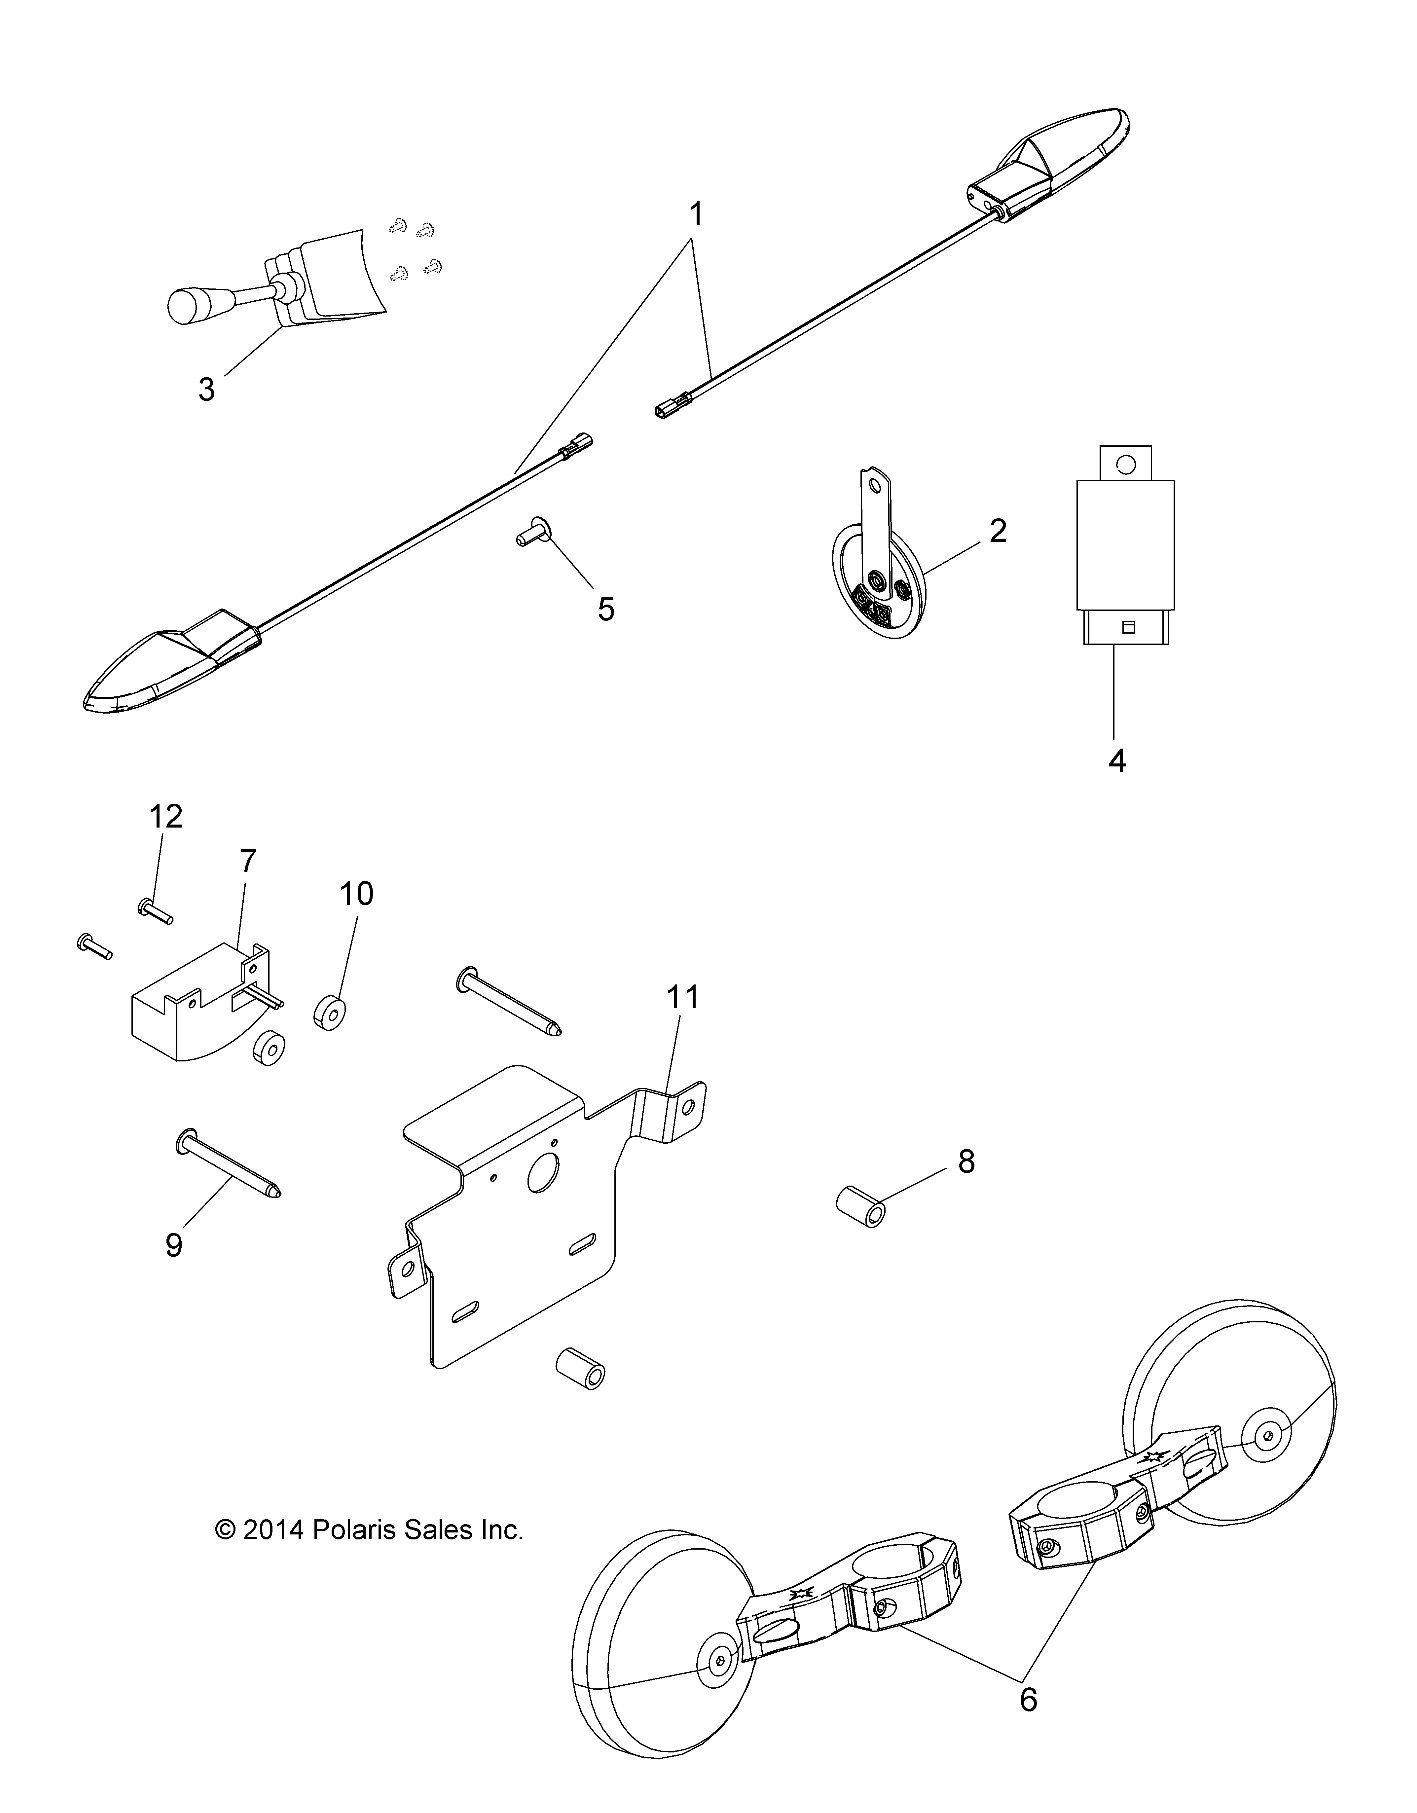 Foto diagrama Polaris que contem a peça 4012704